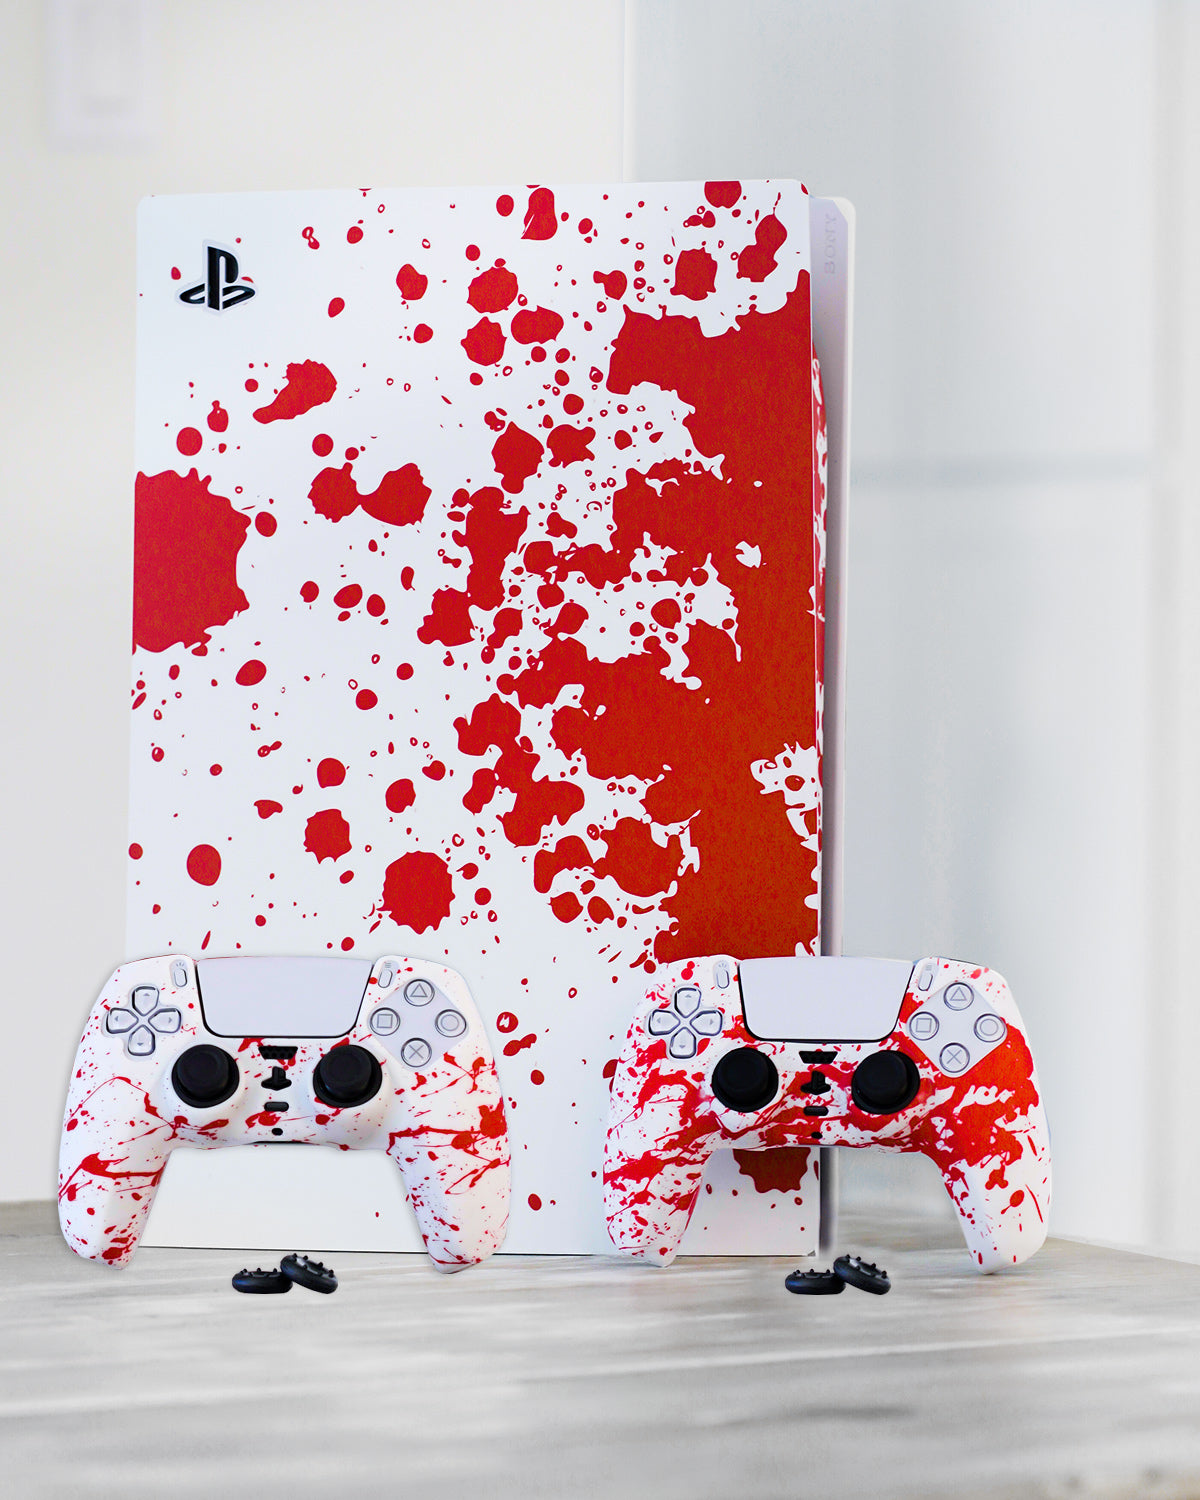 PS5 Blood Splatter Bundle